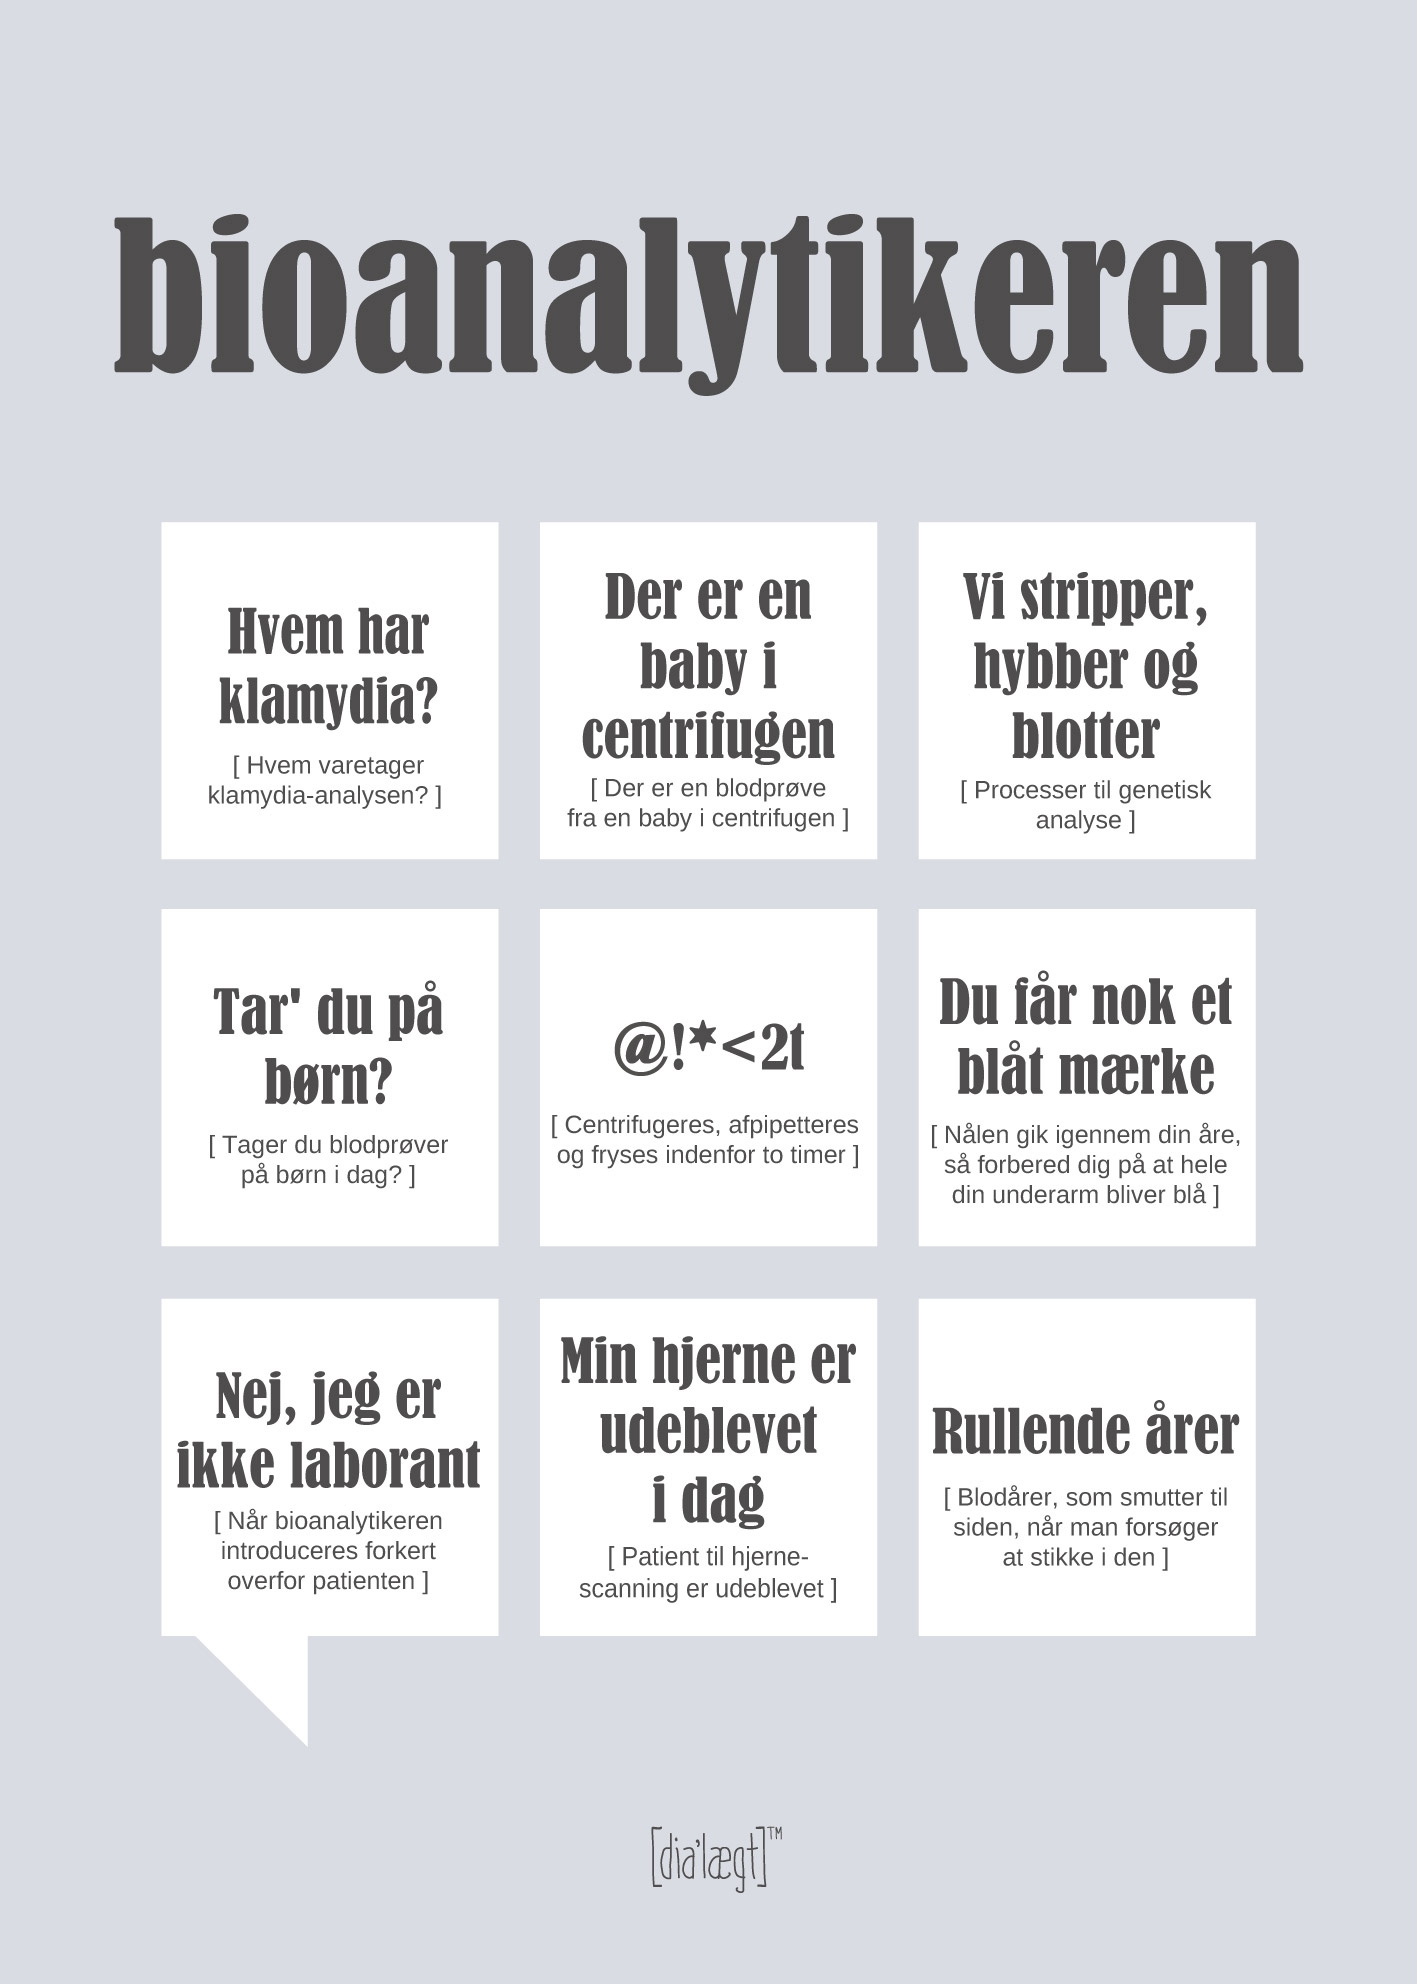 Se Bioanalytikeren-A3 hos Picment.dk